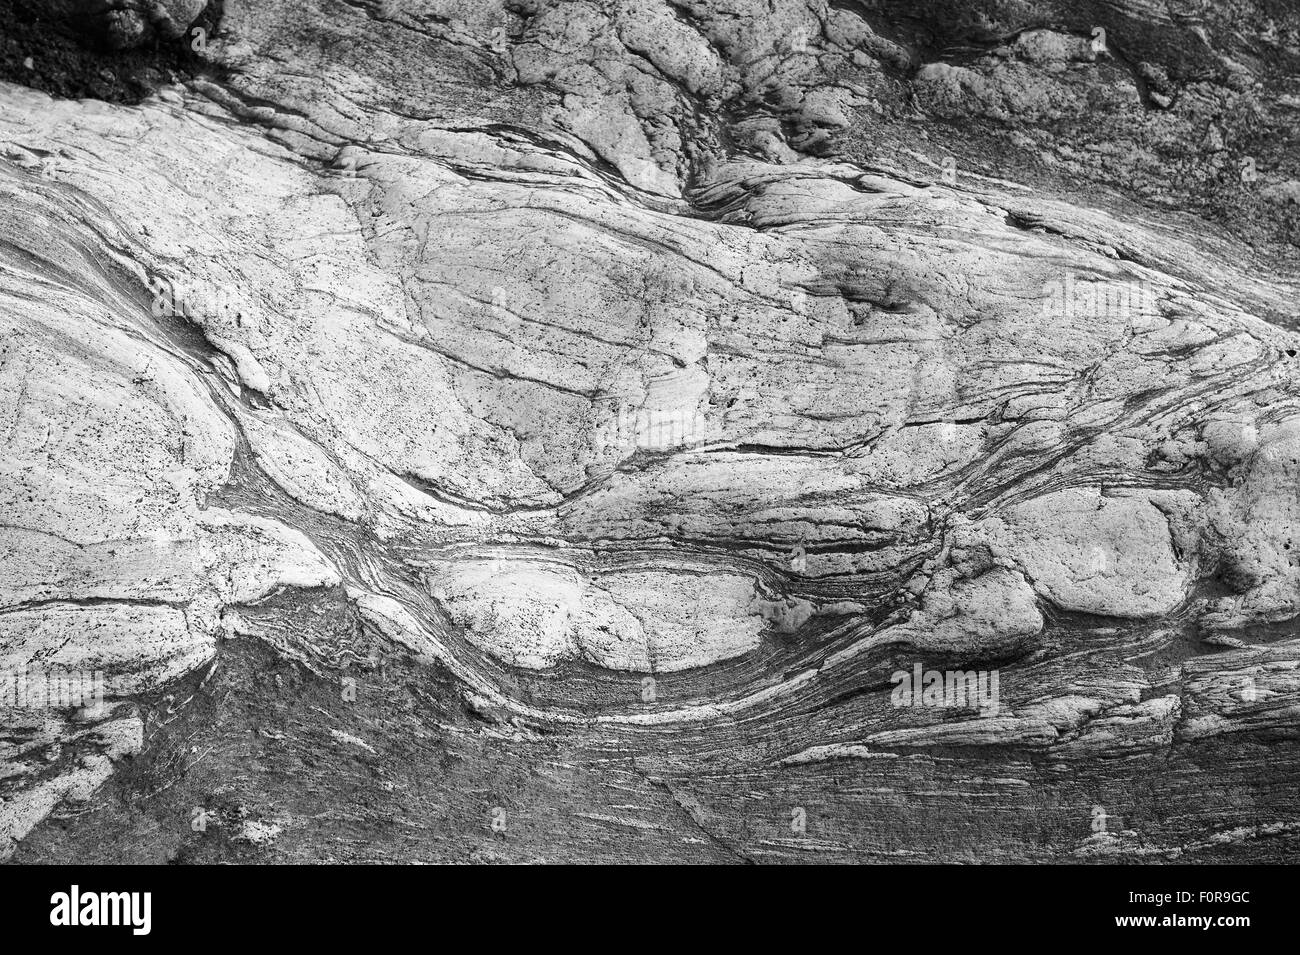 Structures de roche métamorphique dans les affleurements géologiques sous le glacier Briksdalsbreen, Olden, Norvège. Banque D'Images